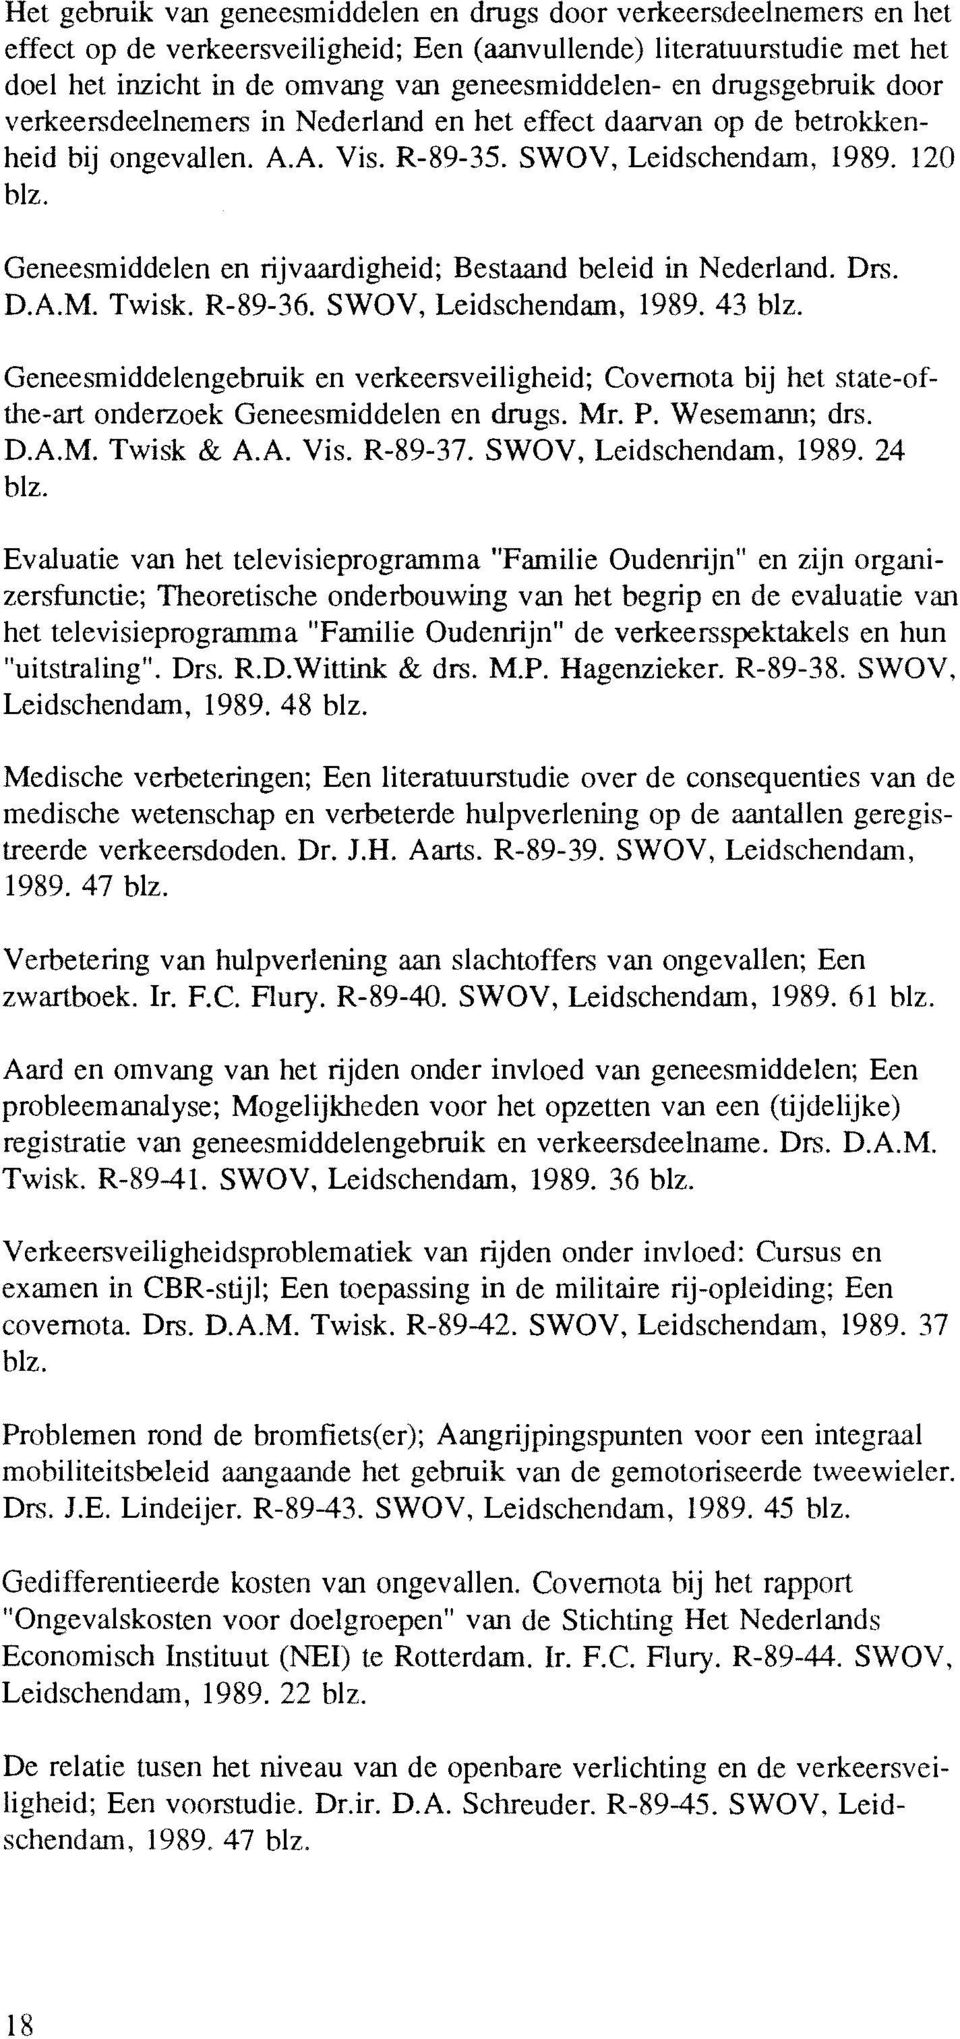 Geneesmiddelen en rijvaardigheid; Bestaand beleid in Nederland. Drs. D.A.M. Twisk. R-89-36. SWOV, Leidschendam, 1989.43 blz.